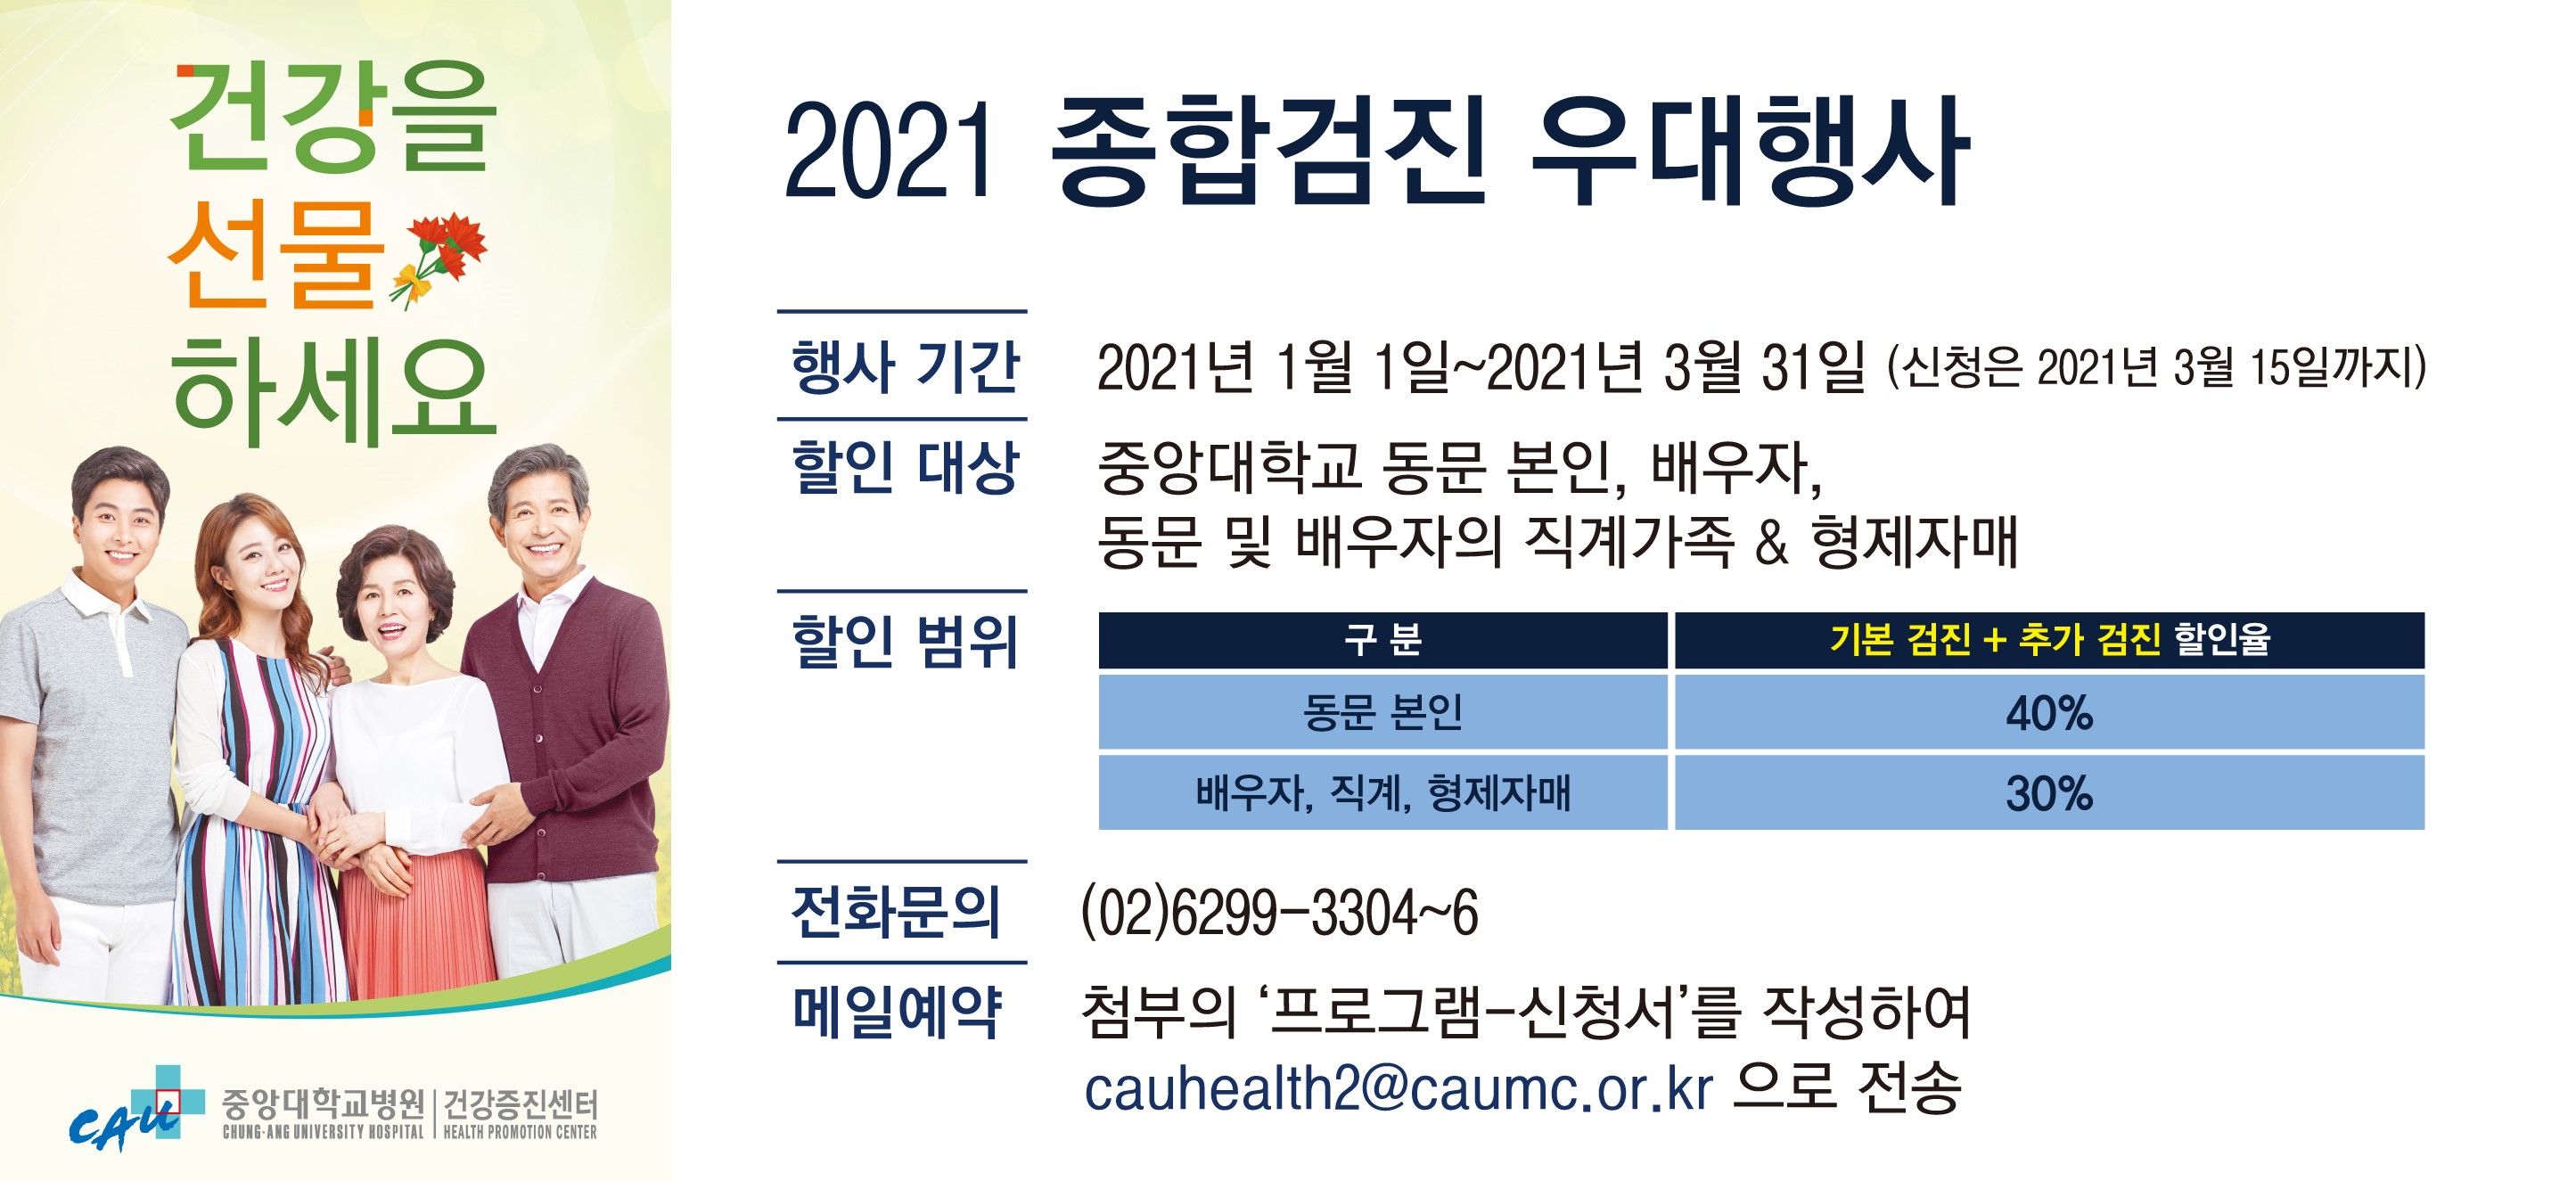 2021 건강검진 할인행사_홍보(중대동창회).jpg